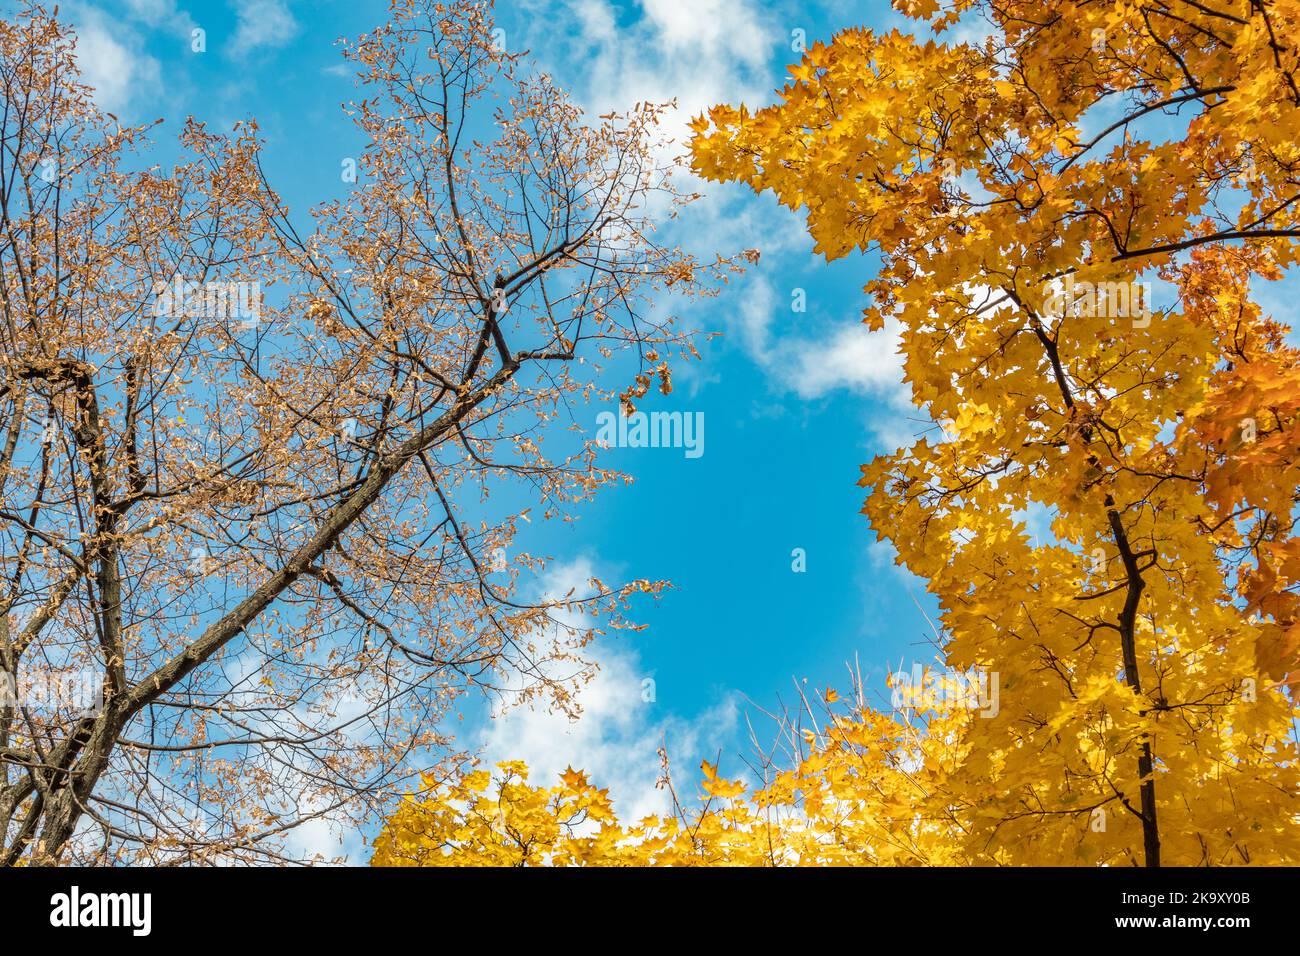 Regard sur la saison dorée de l'automne. Branches d'arbres avec feuilles jaunes sur ciel bleu avec nuages, fond naturel automnal de forêt Banque D'Images